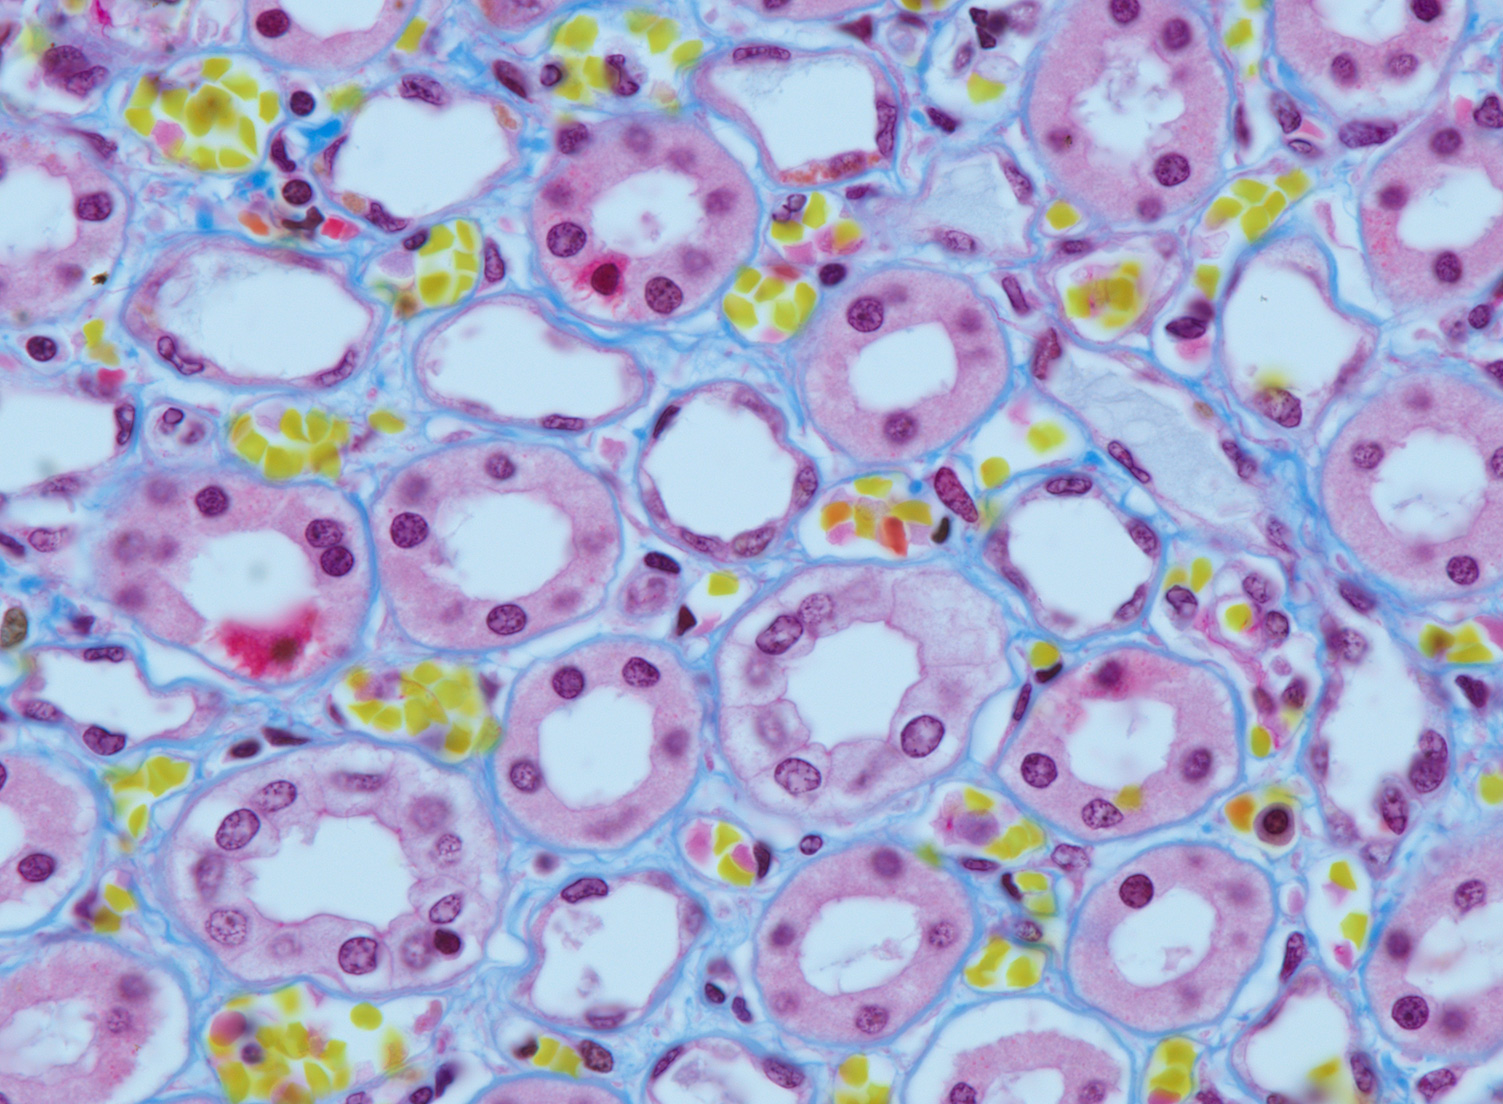 ヒト腎臓のフィブリン。トリクローム染色。対物レンズ：ZEISS Plan-Apochromat 63x/1.4 oil 